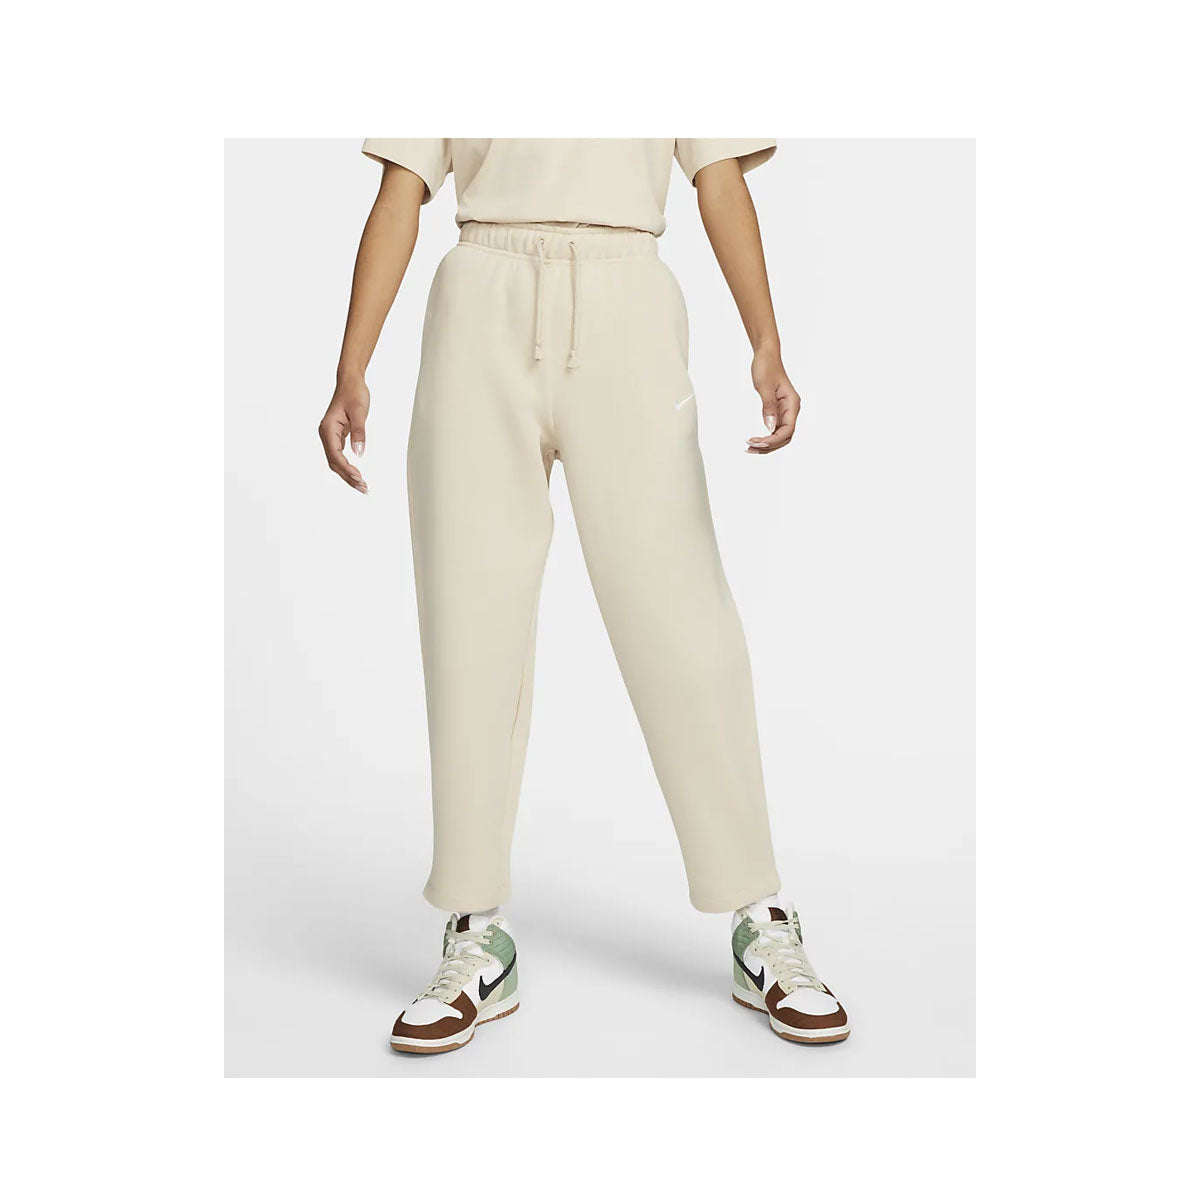 Nike Women's Sportswear CE Fleece Pants (Plus Size)